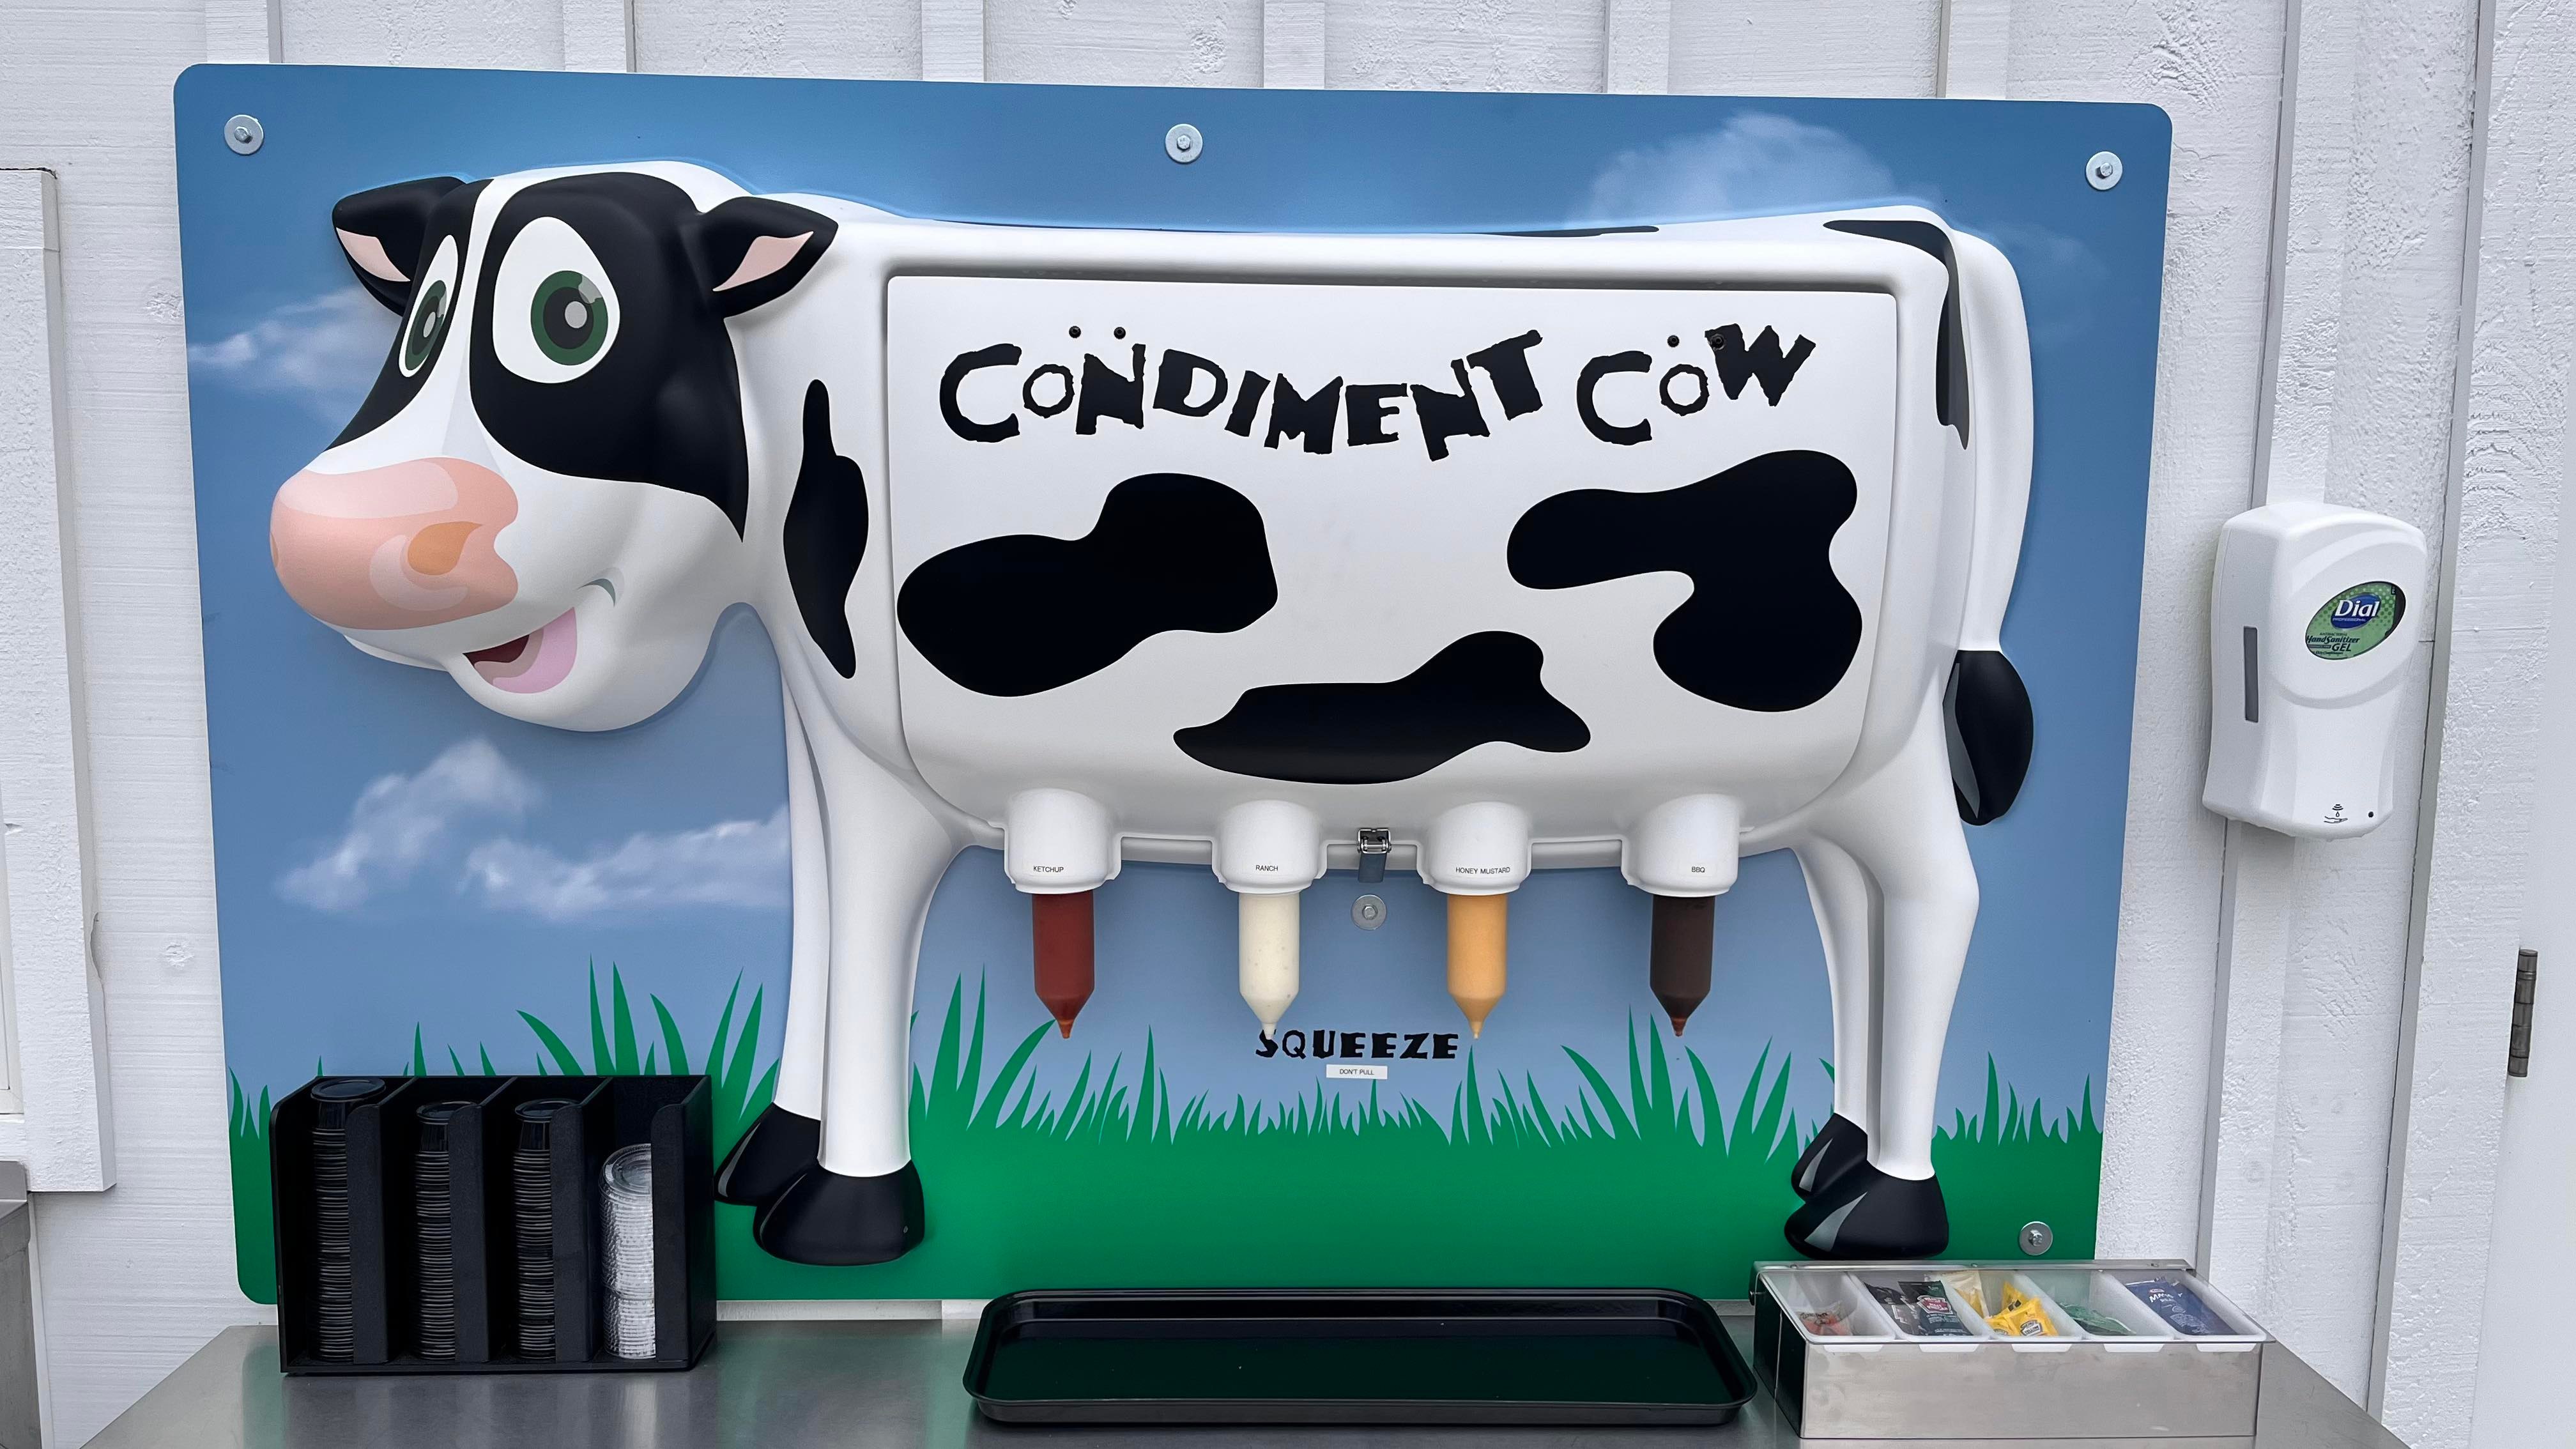 Fifer's Condiment Cow